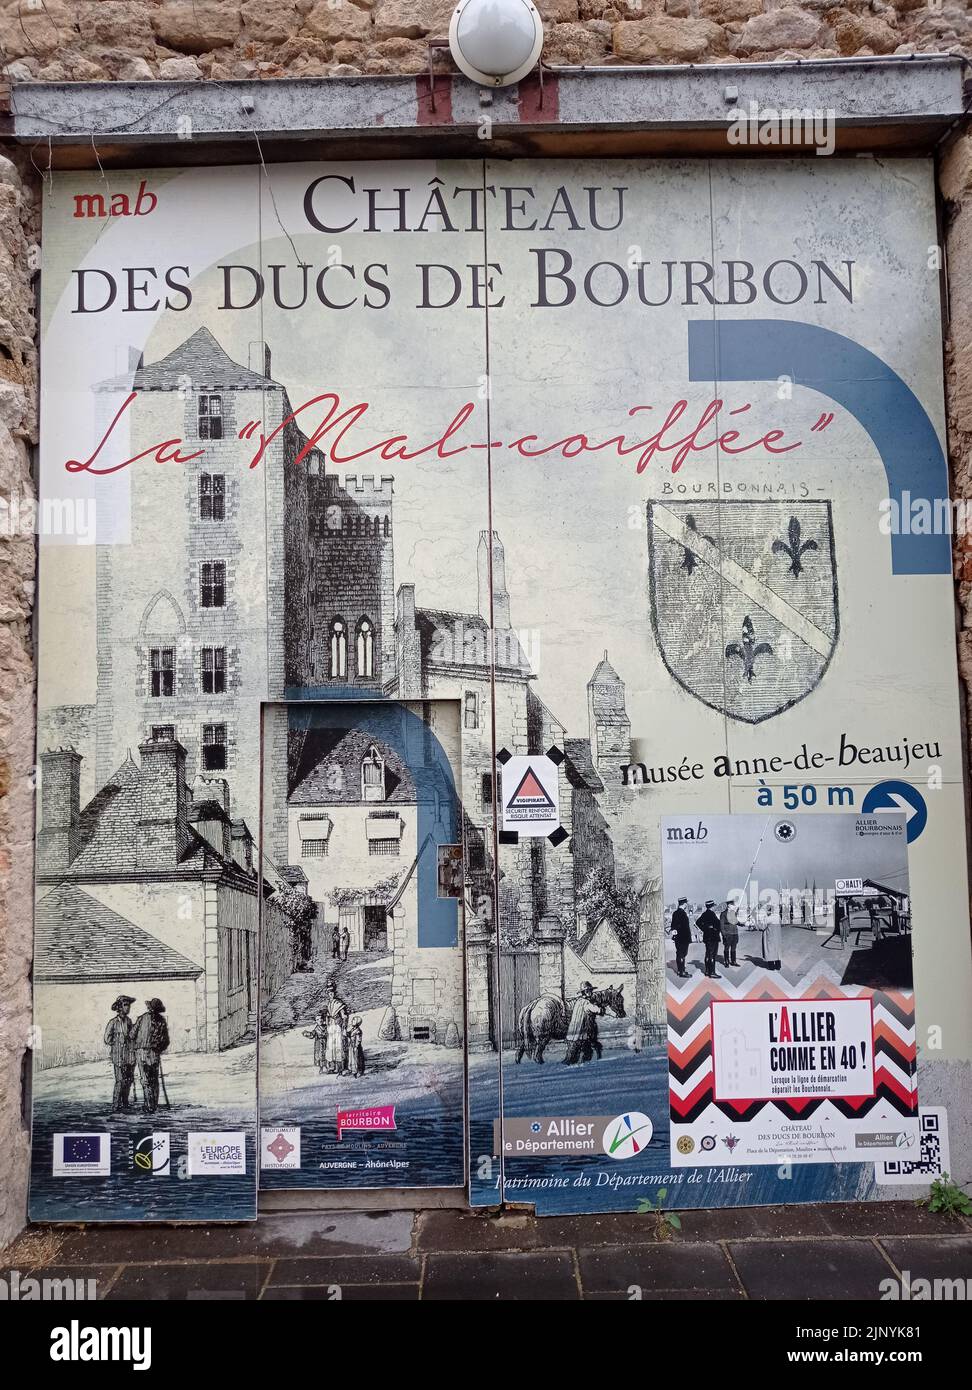 La ville de Moulins, Histoire de la II e Guerre Mondiale, Allier, France Stock Photo